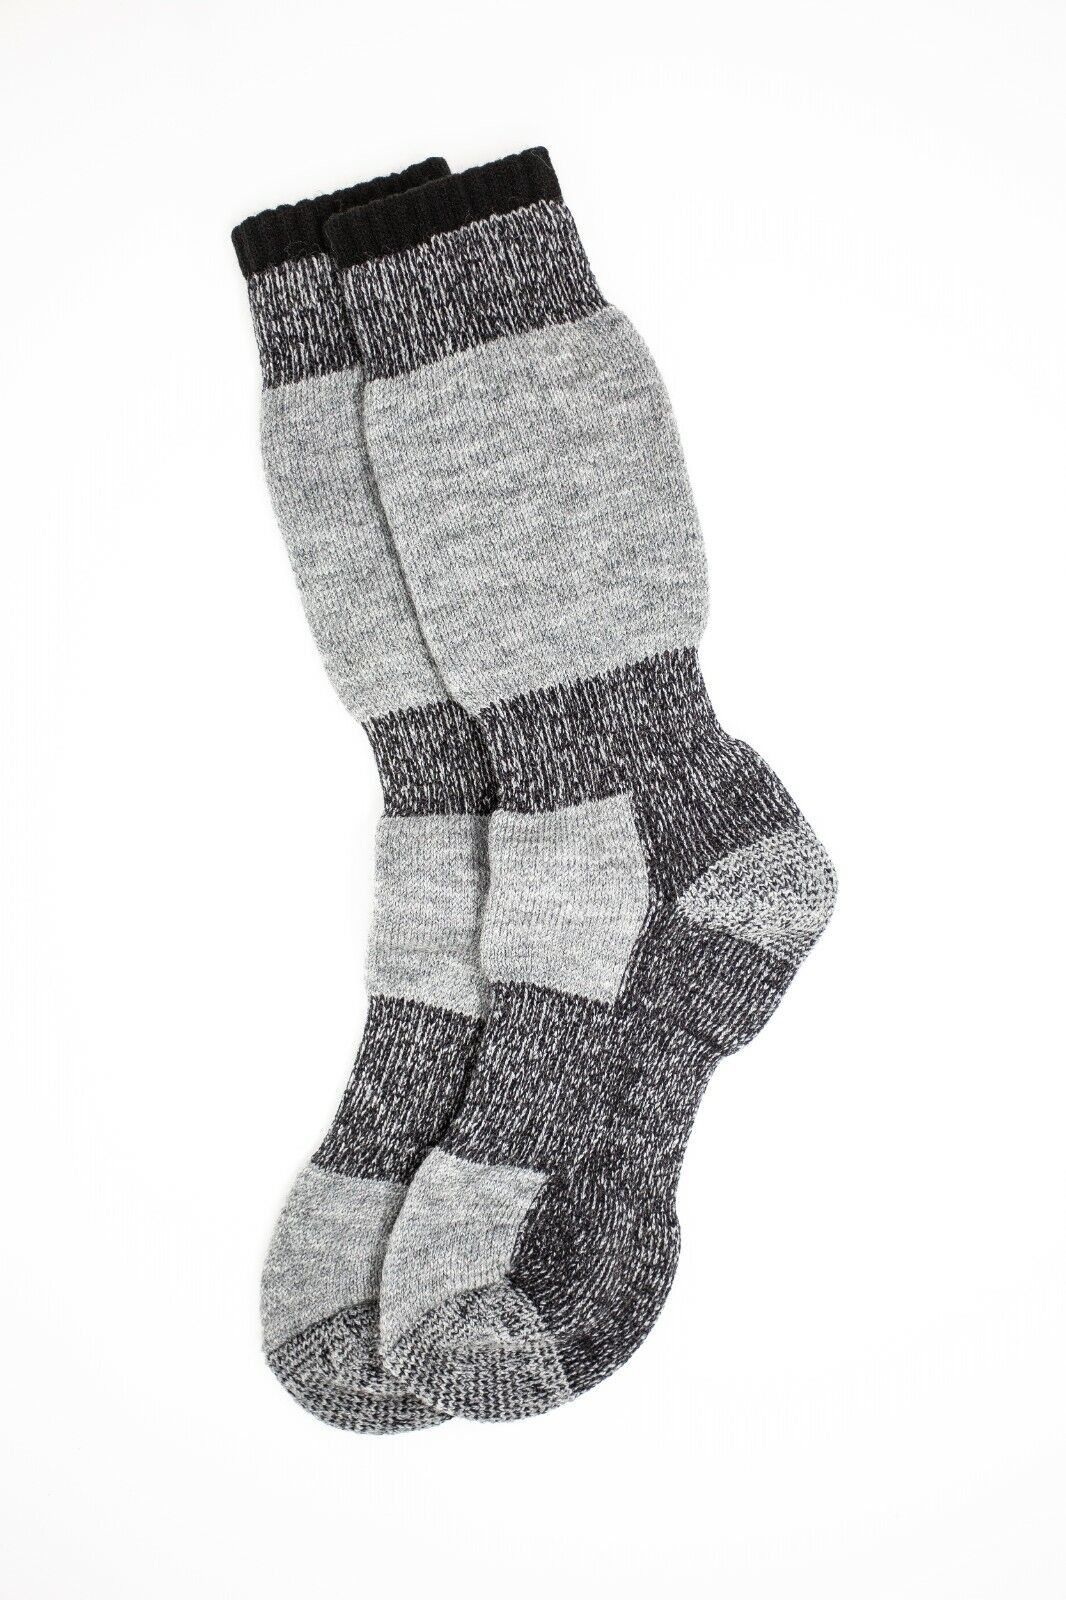 3 PAIR - J.B. Field's Icelandic "-30 Below XLR" Merino Wool Thermal Socks (Slightly Imperfect)